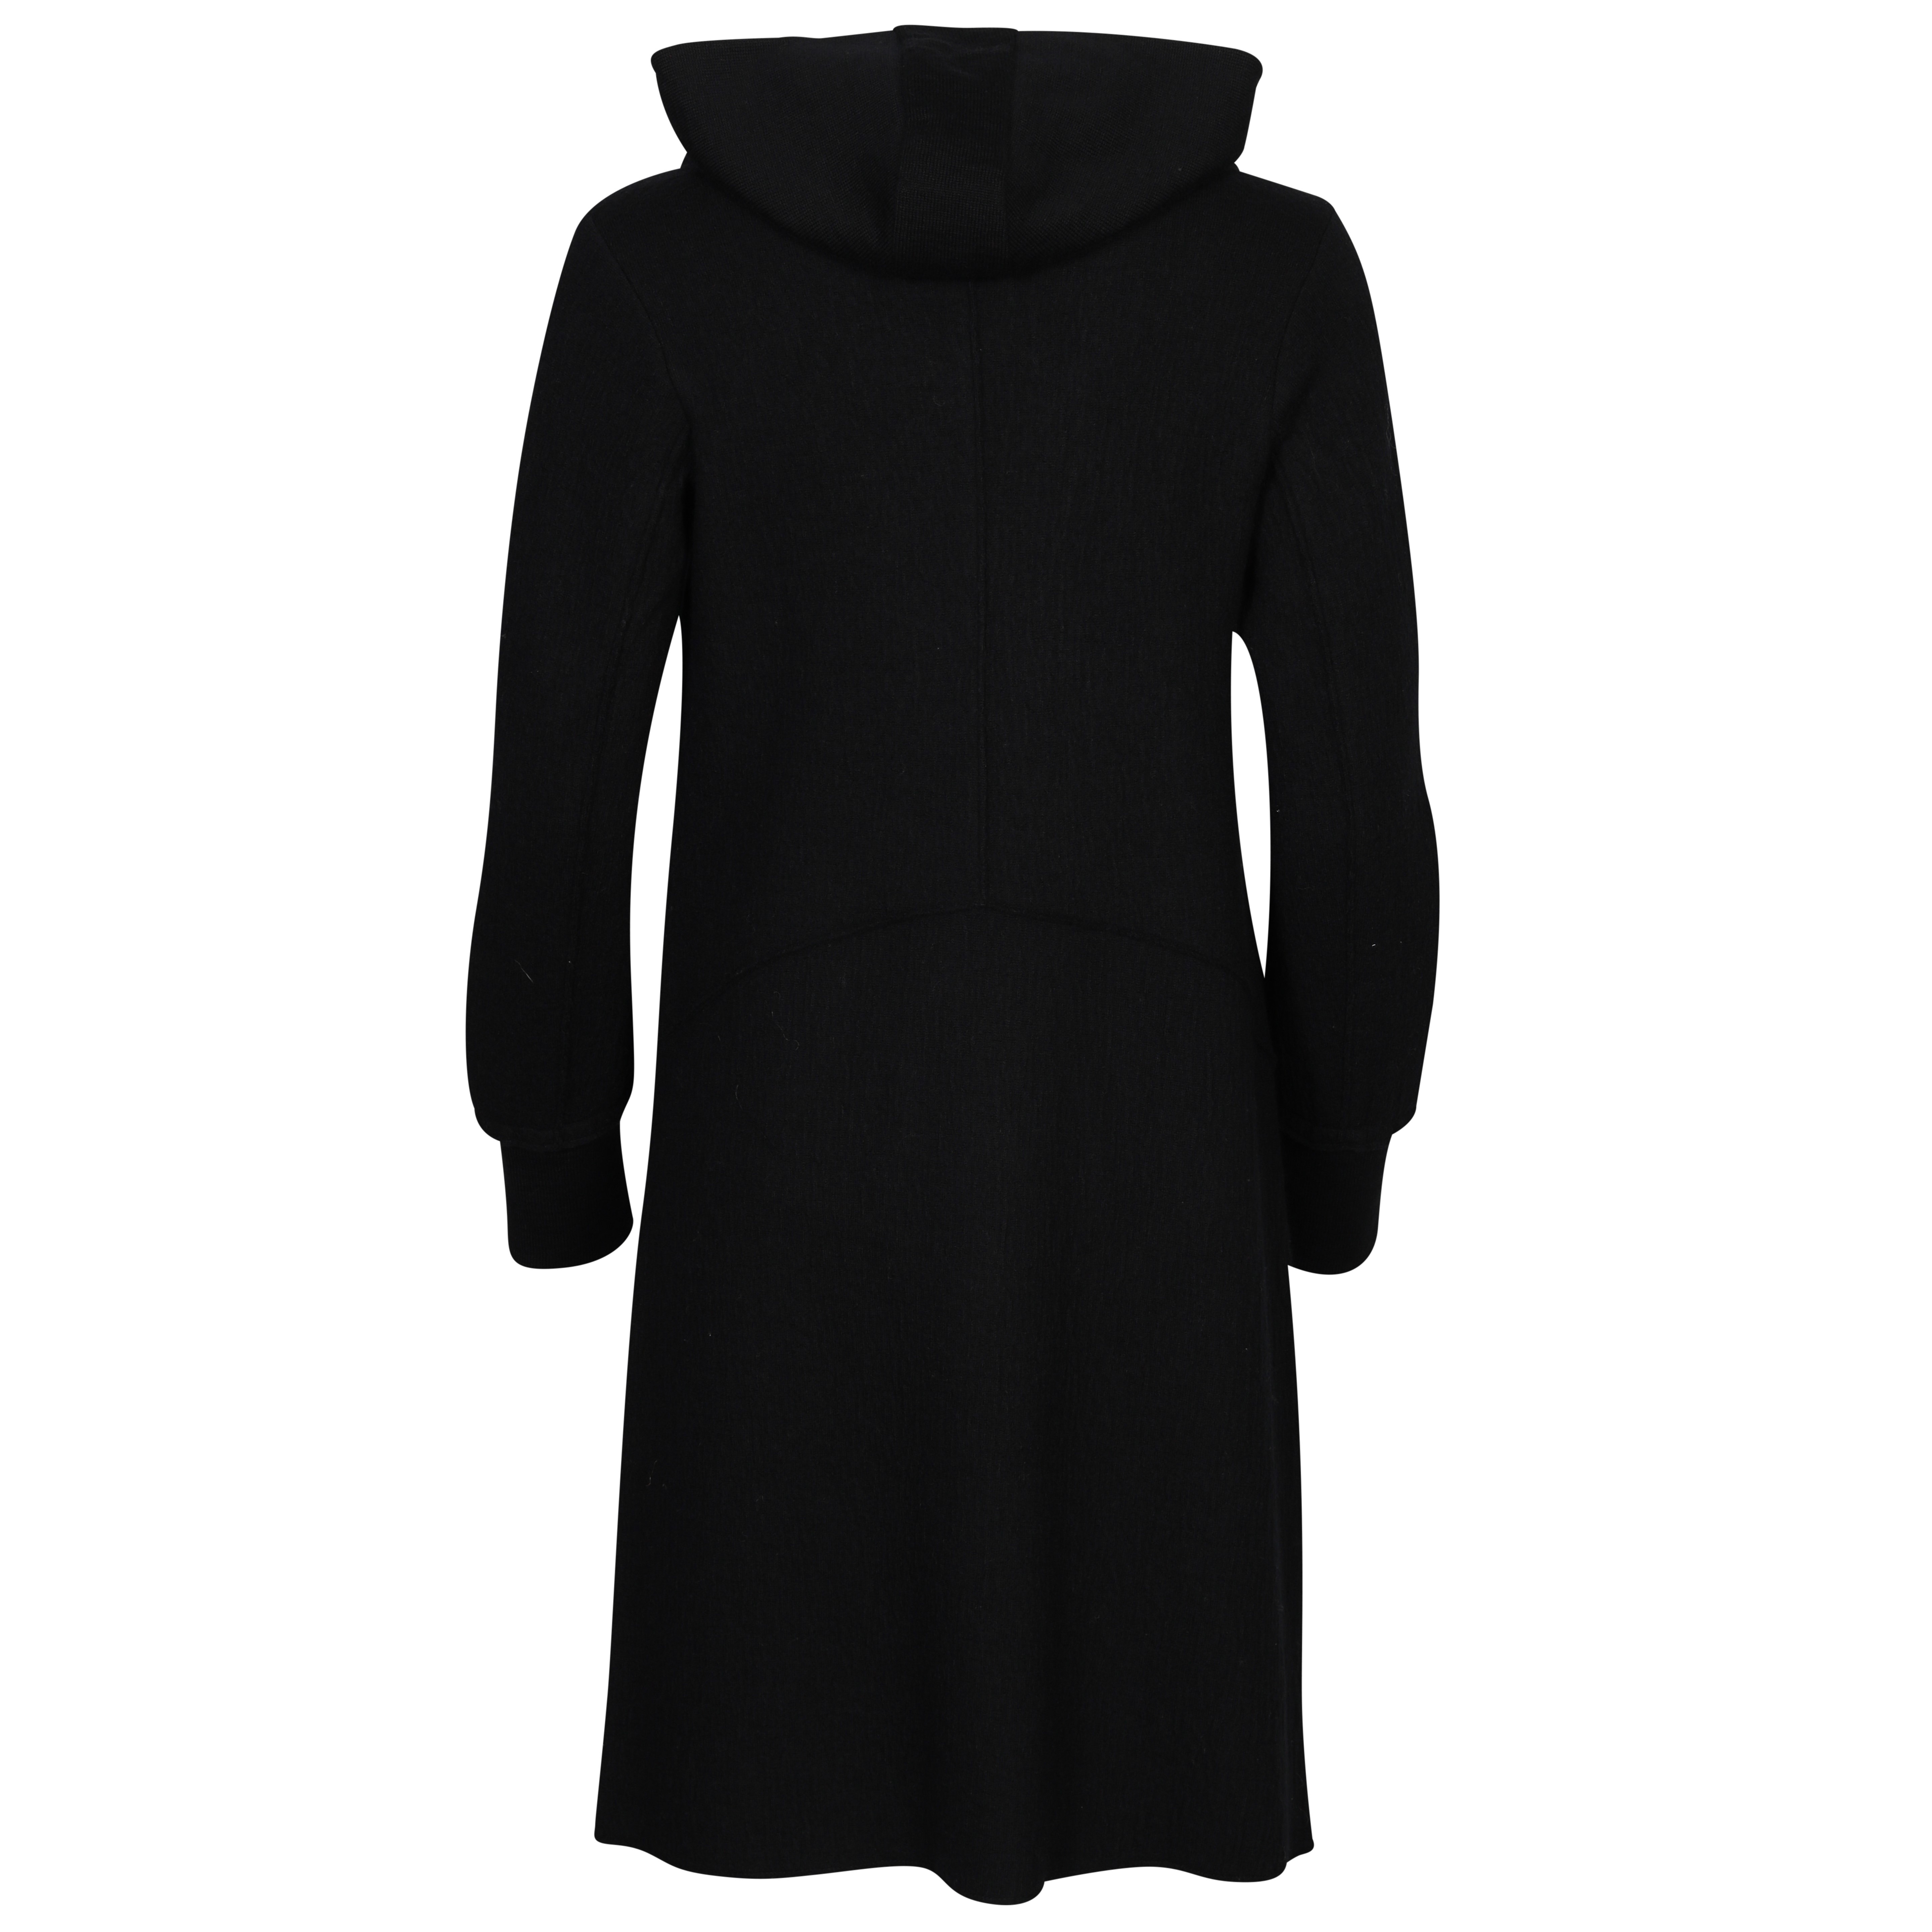 Transit Par Such Coat in Black With Detachable Hood M